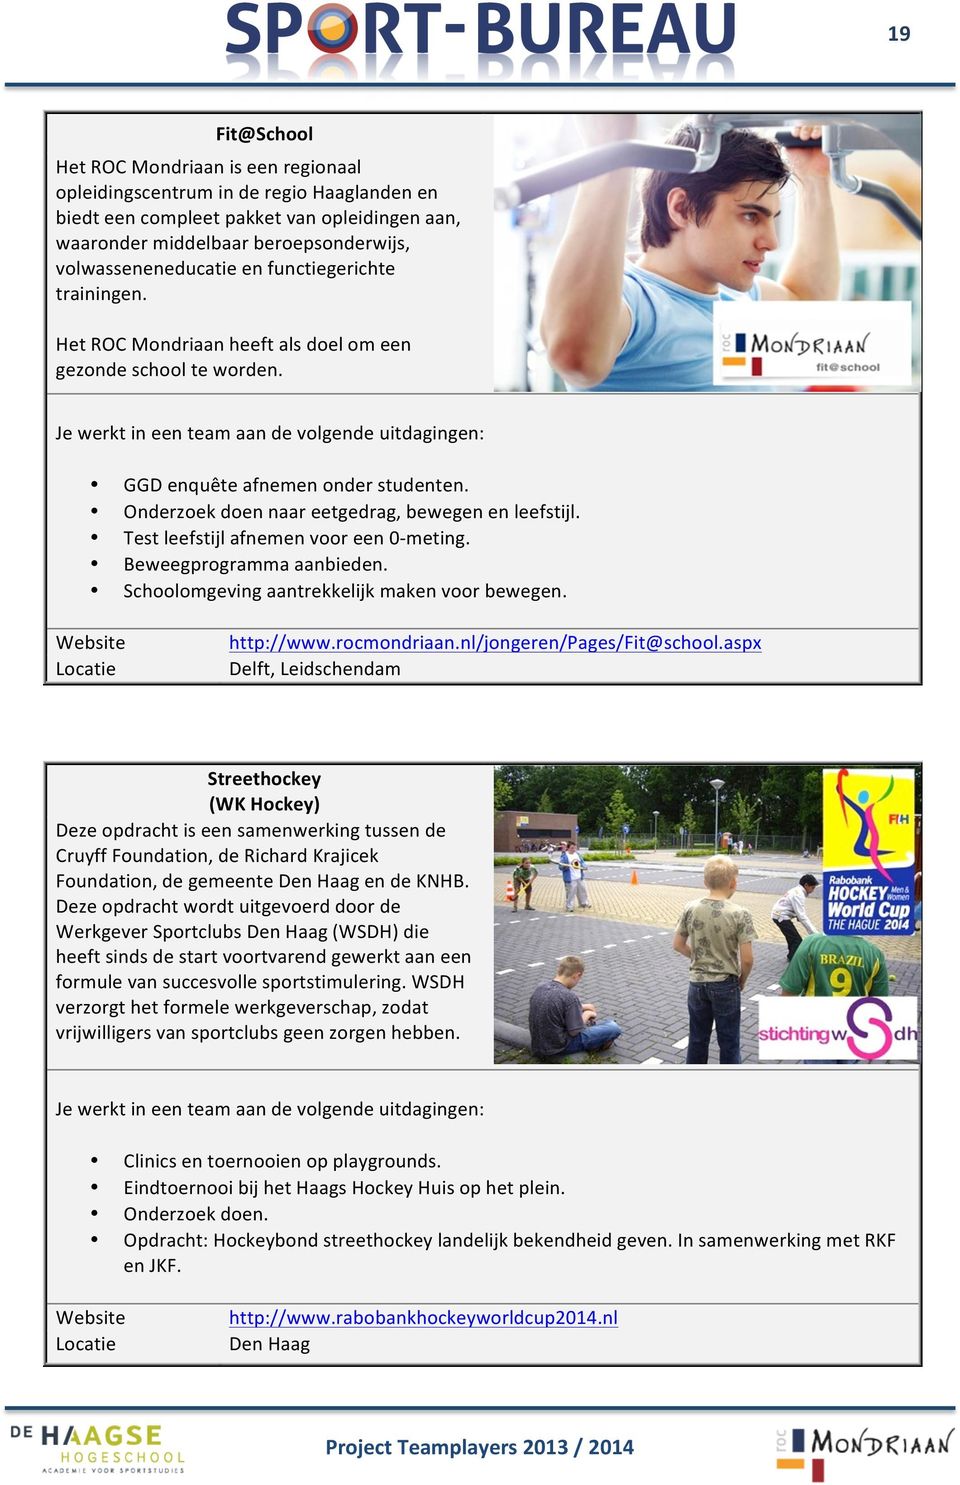 Test leefstijl afnemen voor een 0- meting. Beweegprogramma aanbieden. Schoolomgeving aantrekkelijk maken voor bewegen. http://www.rocmondriaan.nl/jongeren/pages/fit@school.